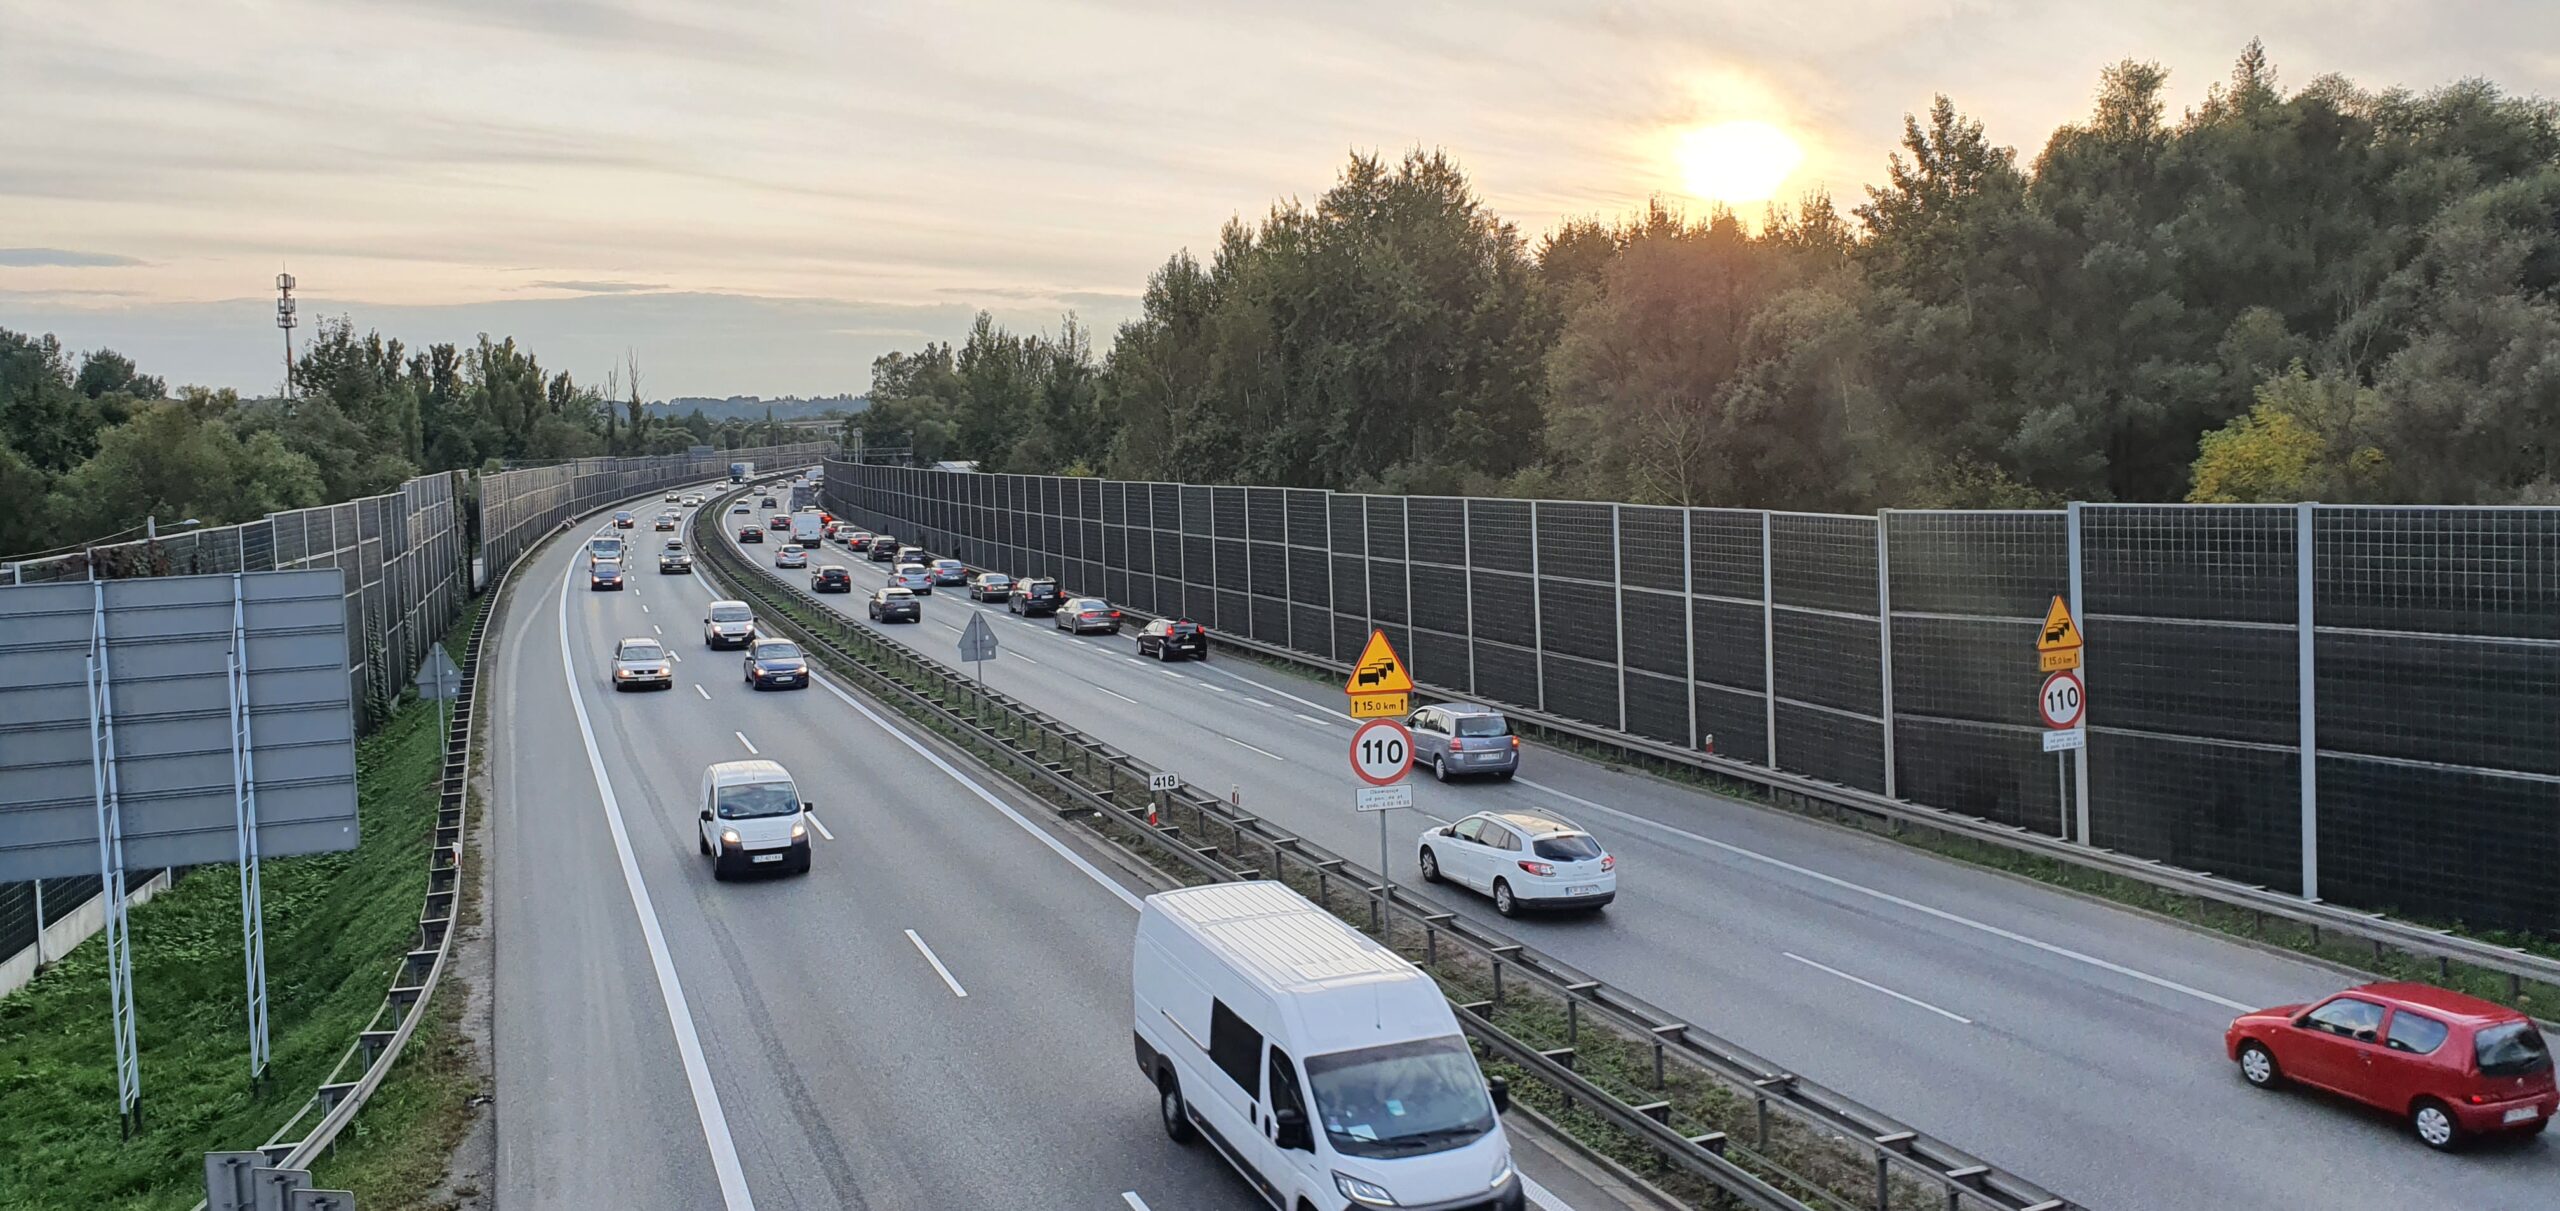 Ograniczenie prędkości na autostradowej obwodnicy Krakowa. Gdzie i dlaczego?